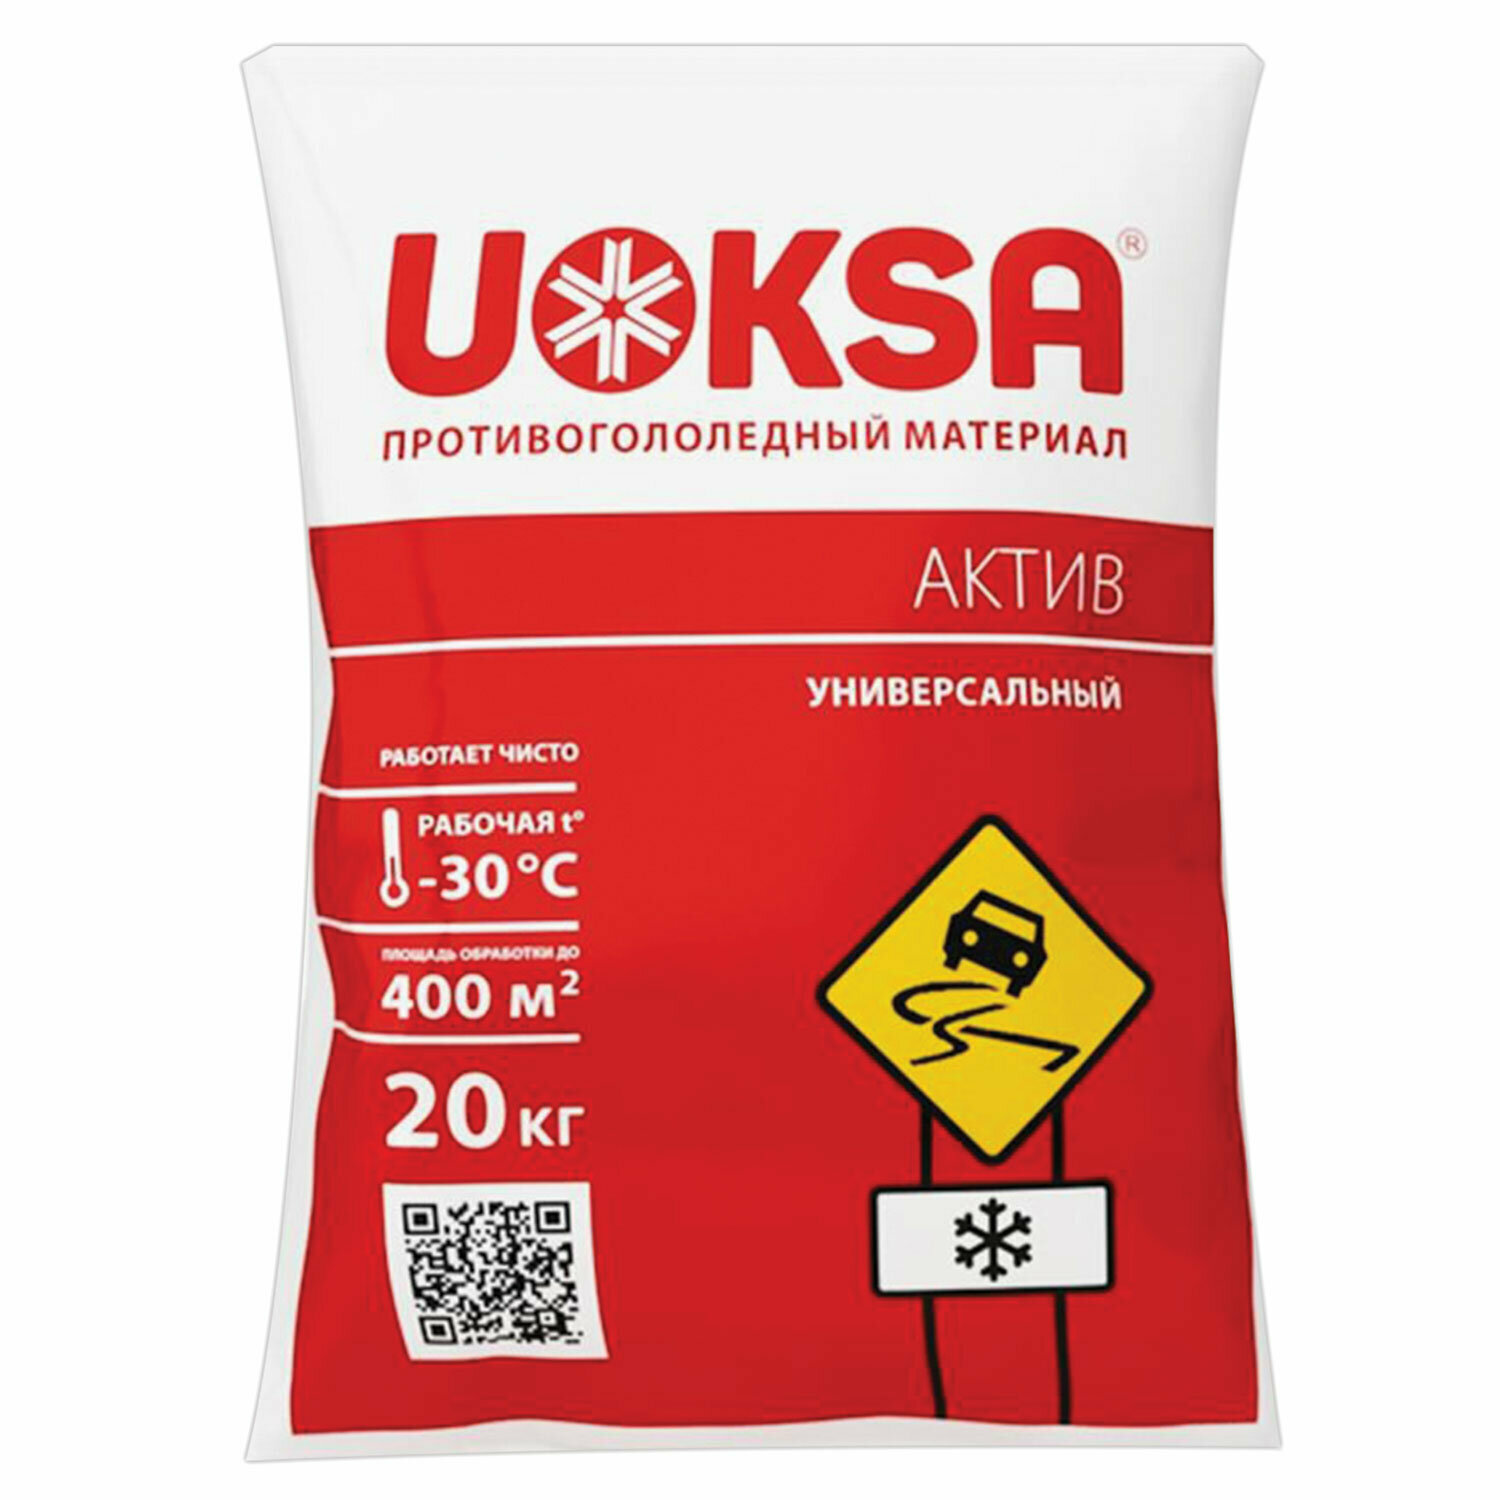 Реагент противогололёдный 20 кг UOKSA Актив, до -30°C, хлорид кальция + минеральной соли, мешок. 607413